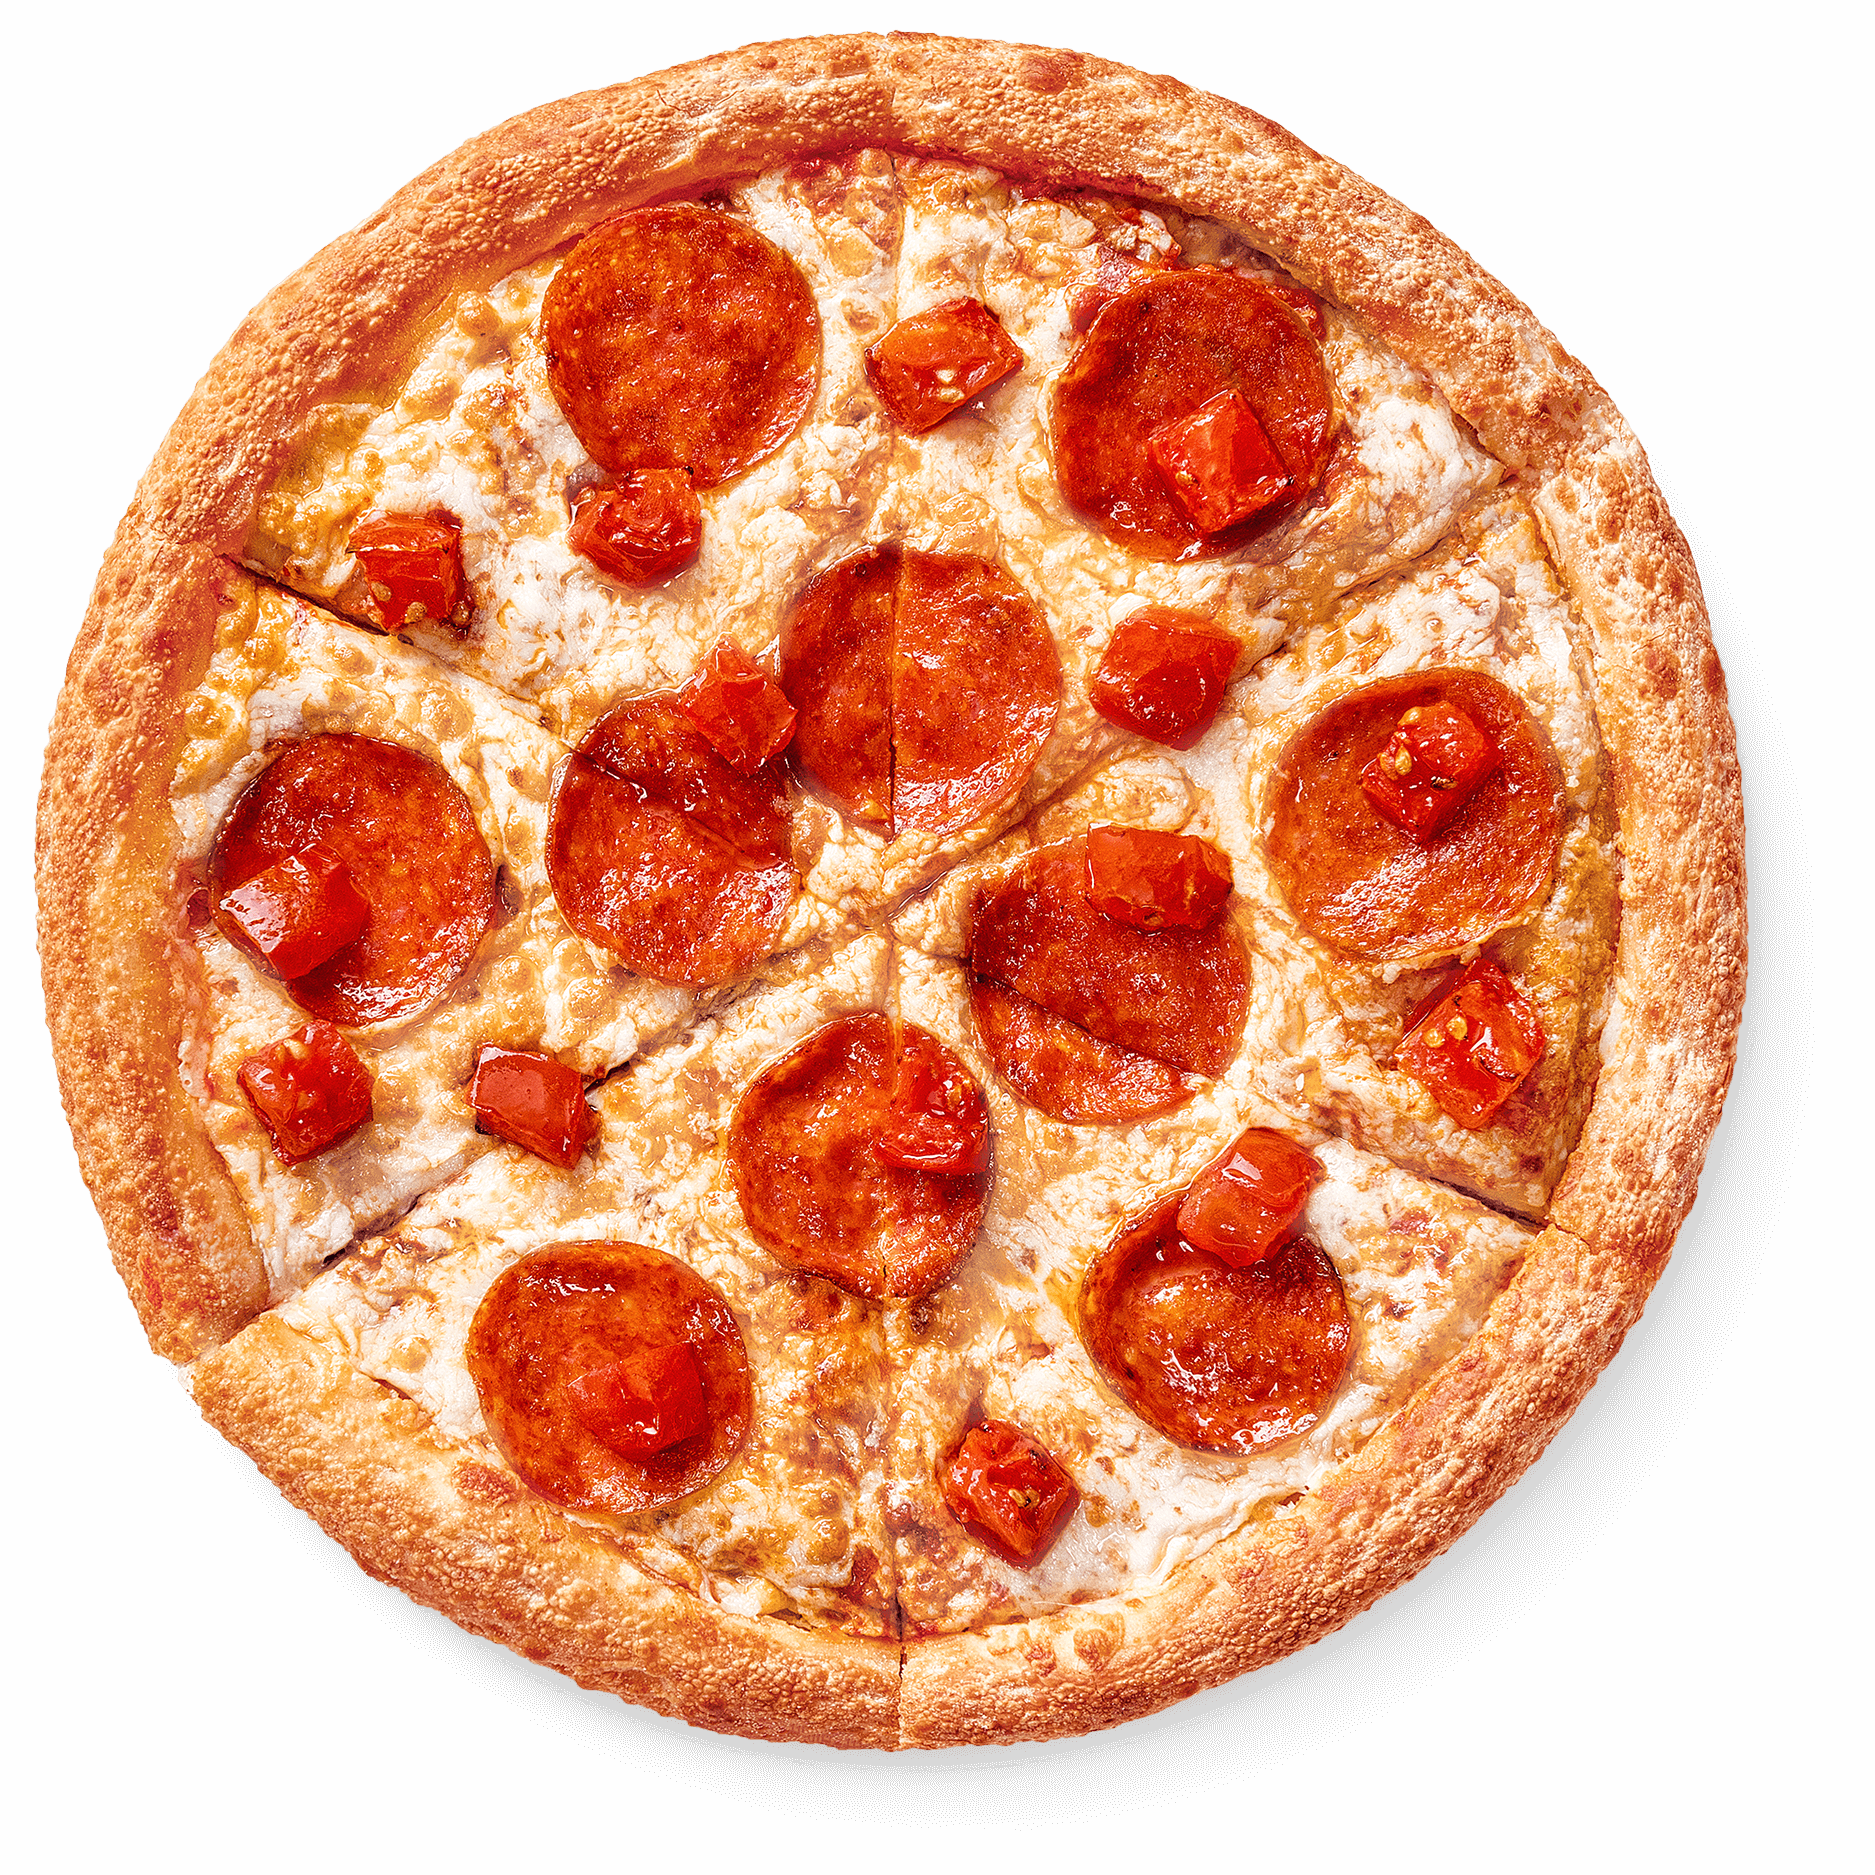 сколько стоит большая пицца пепперони в додо пицце фото 7